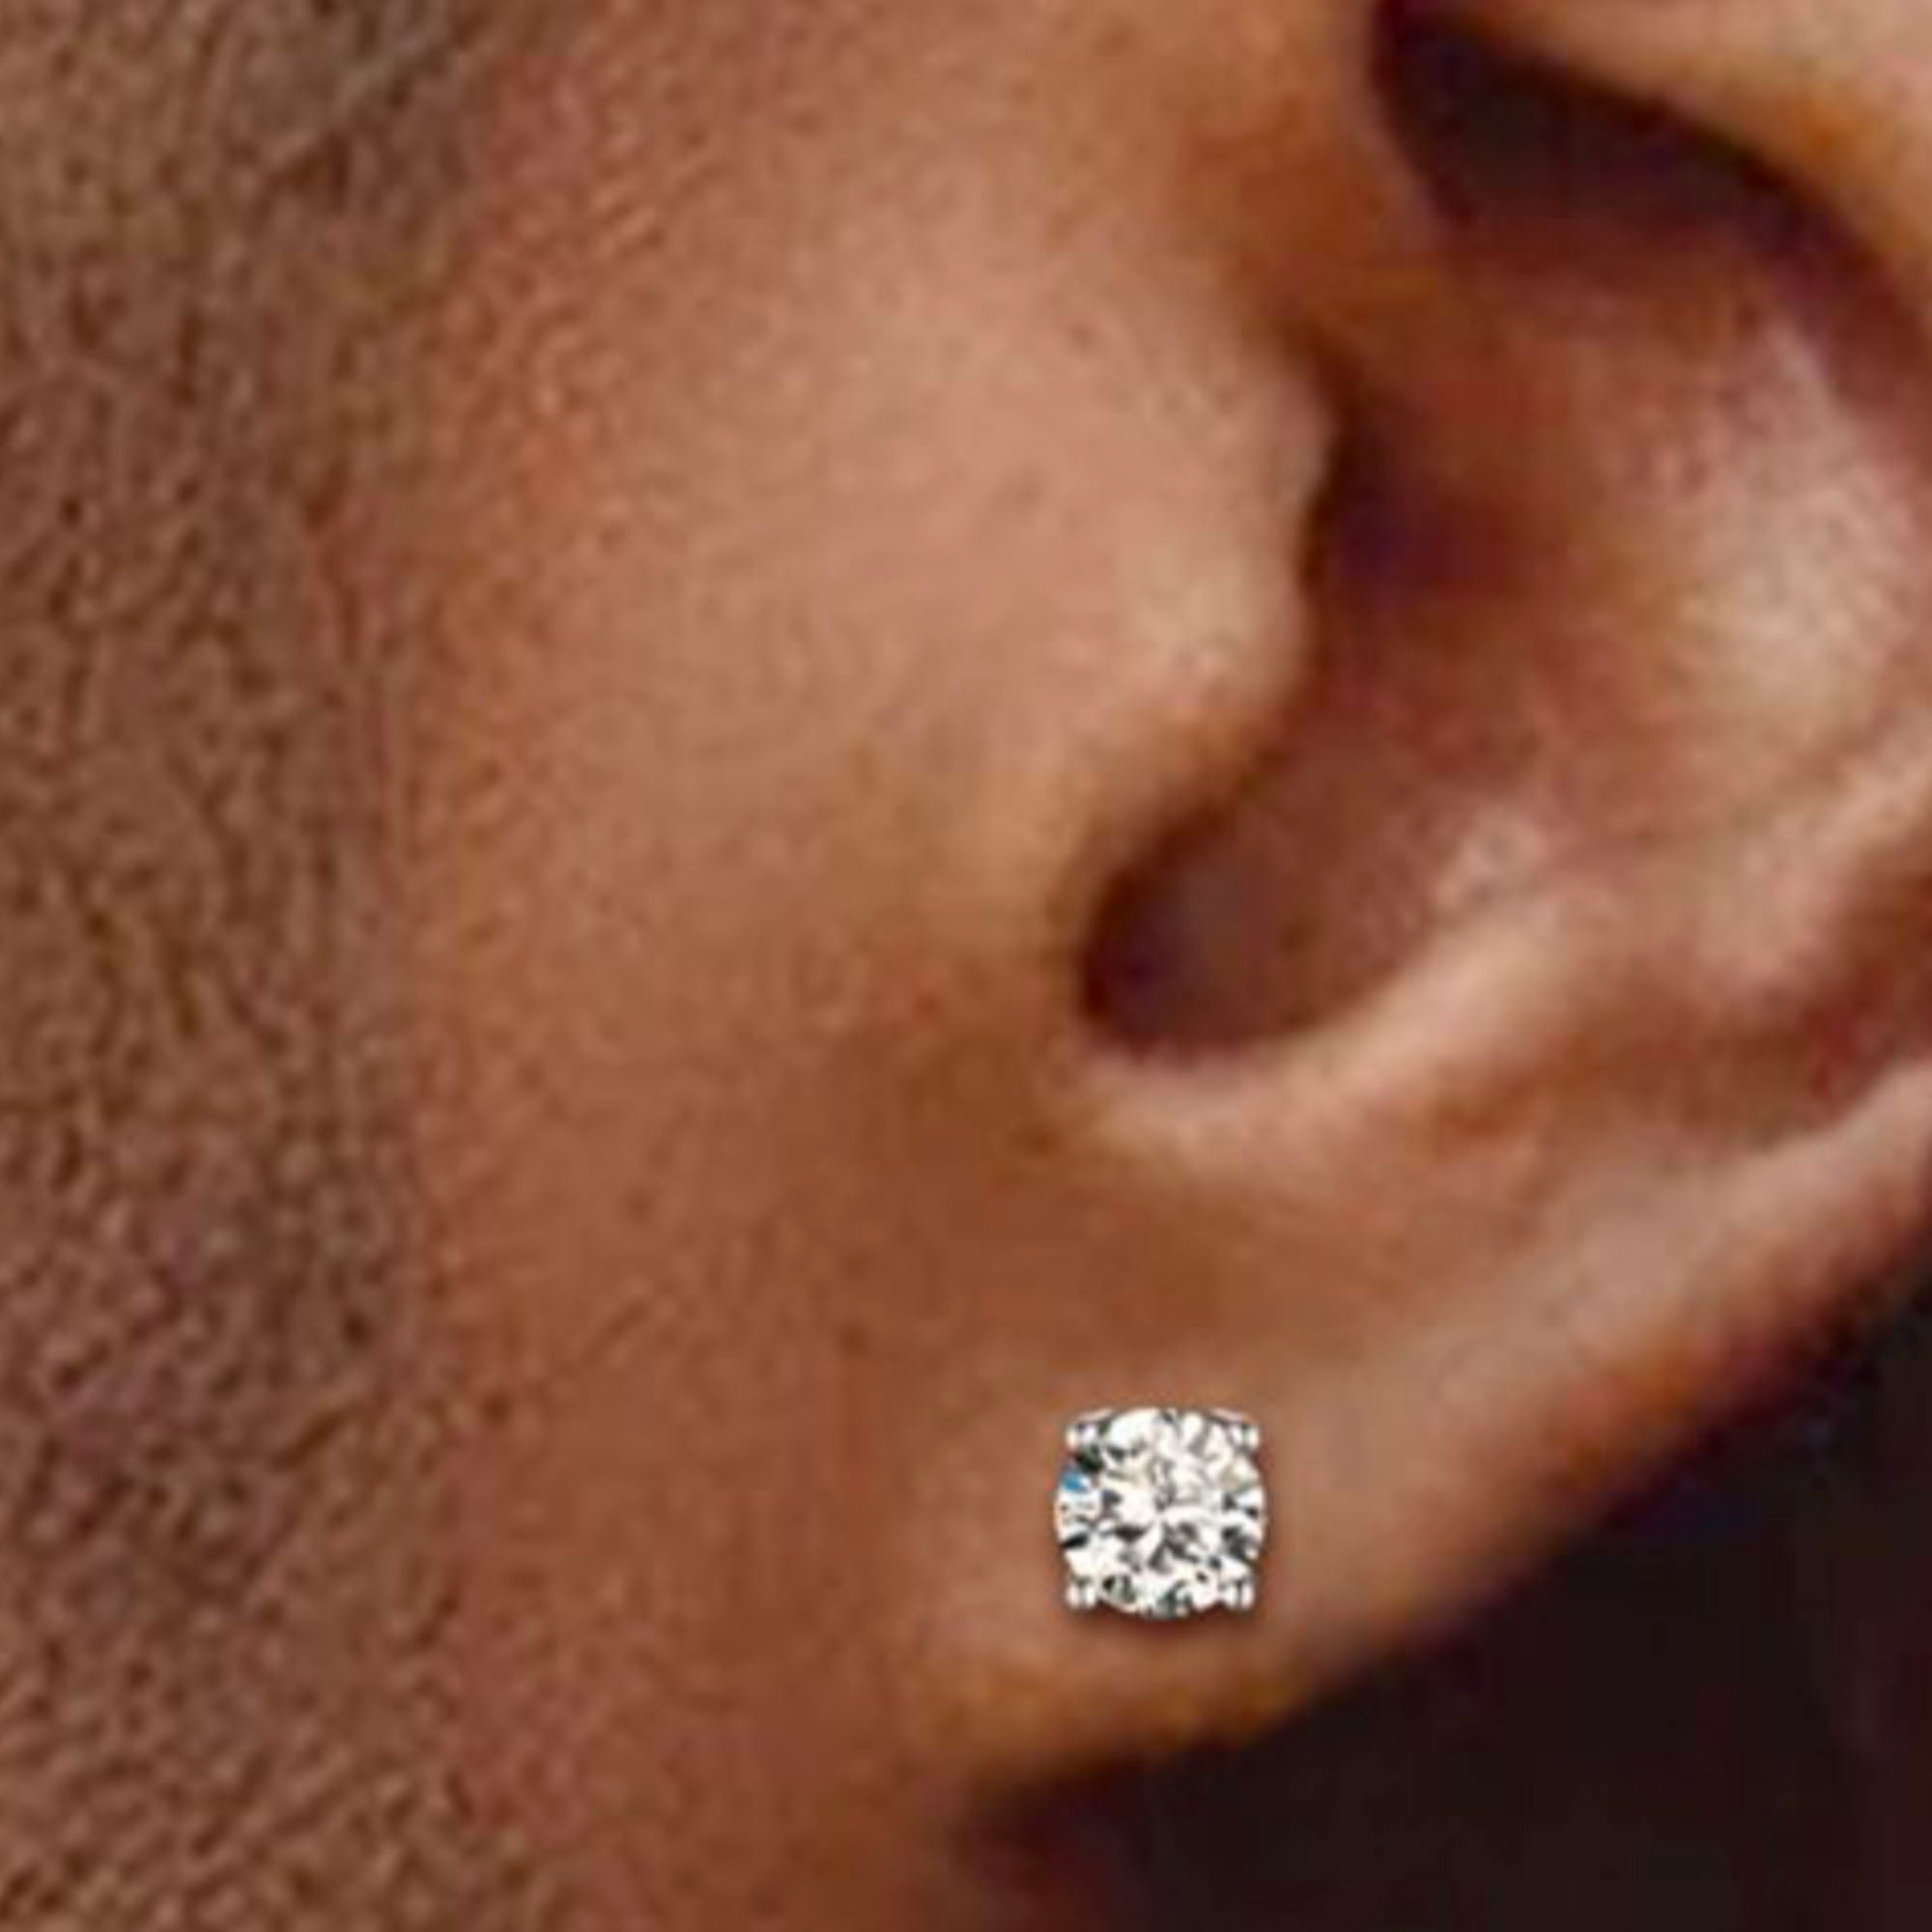 Diamond Stud Earrings - 2.50 Carats Each Ear